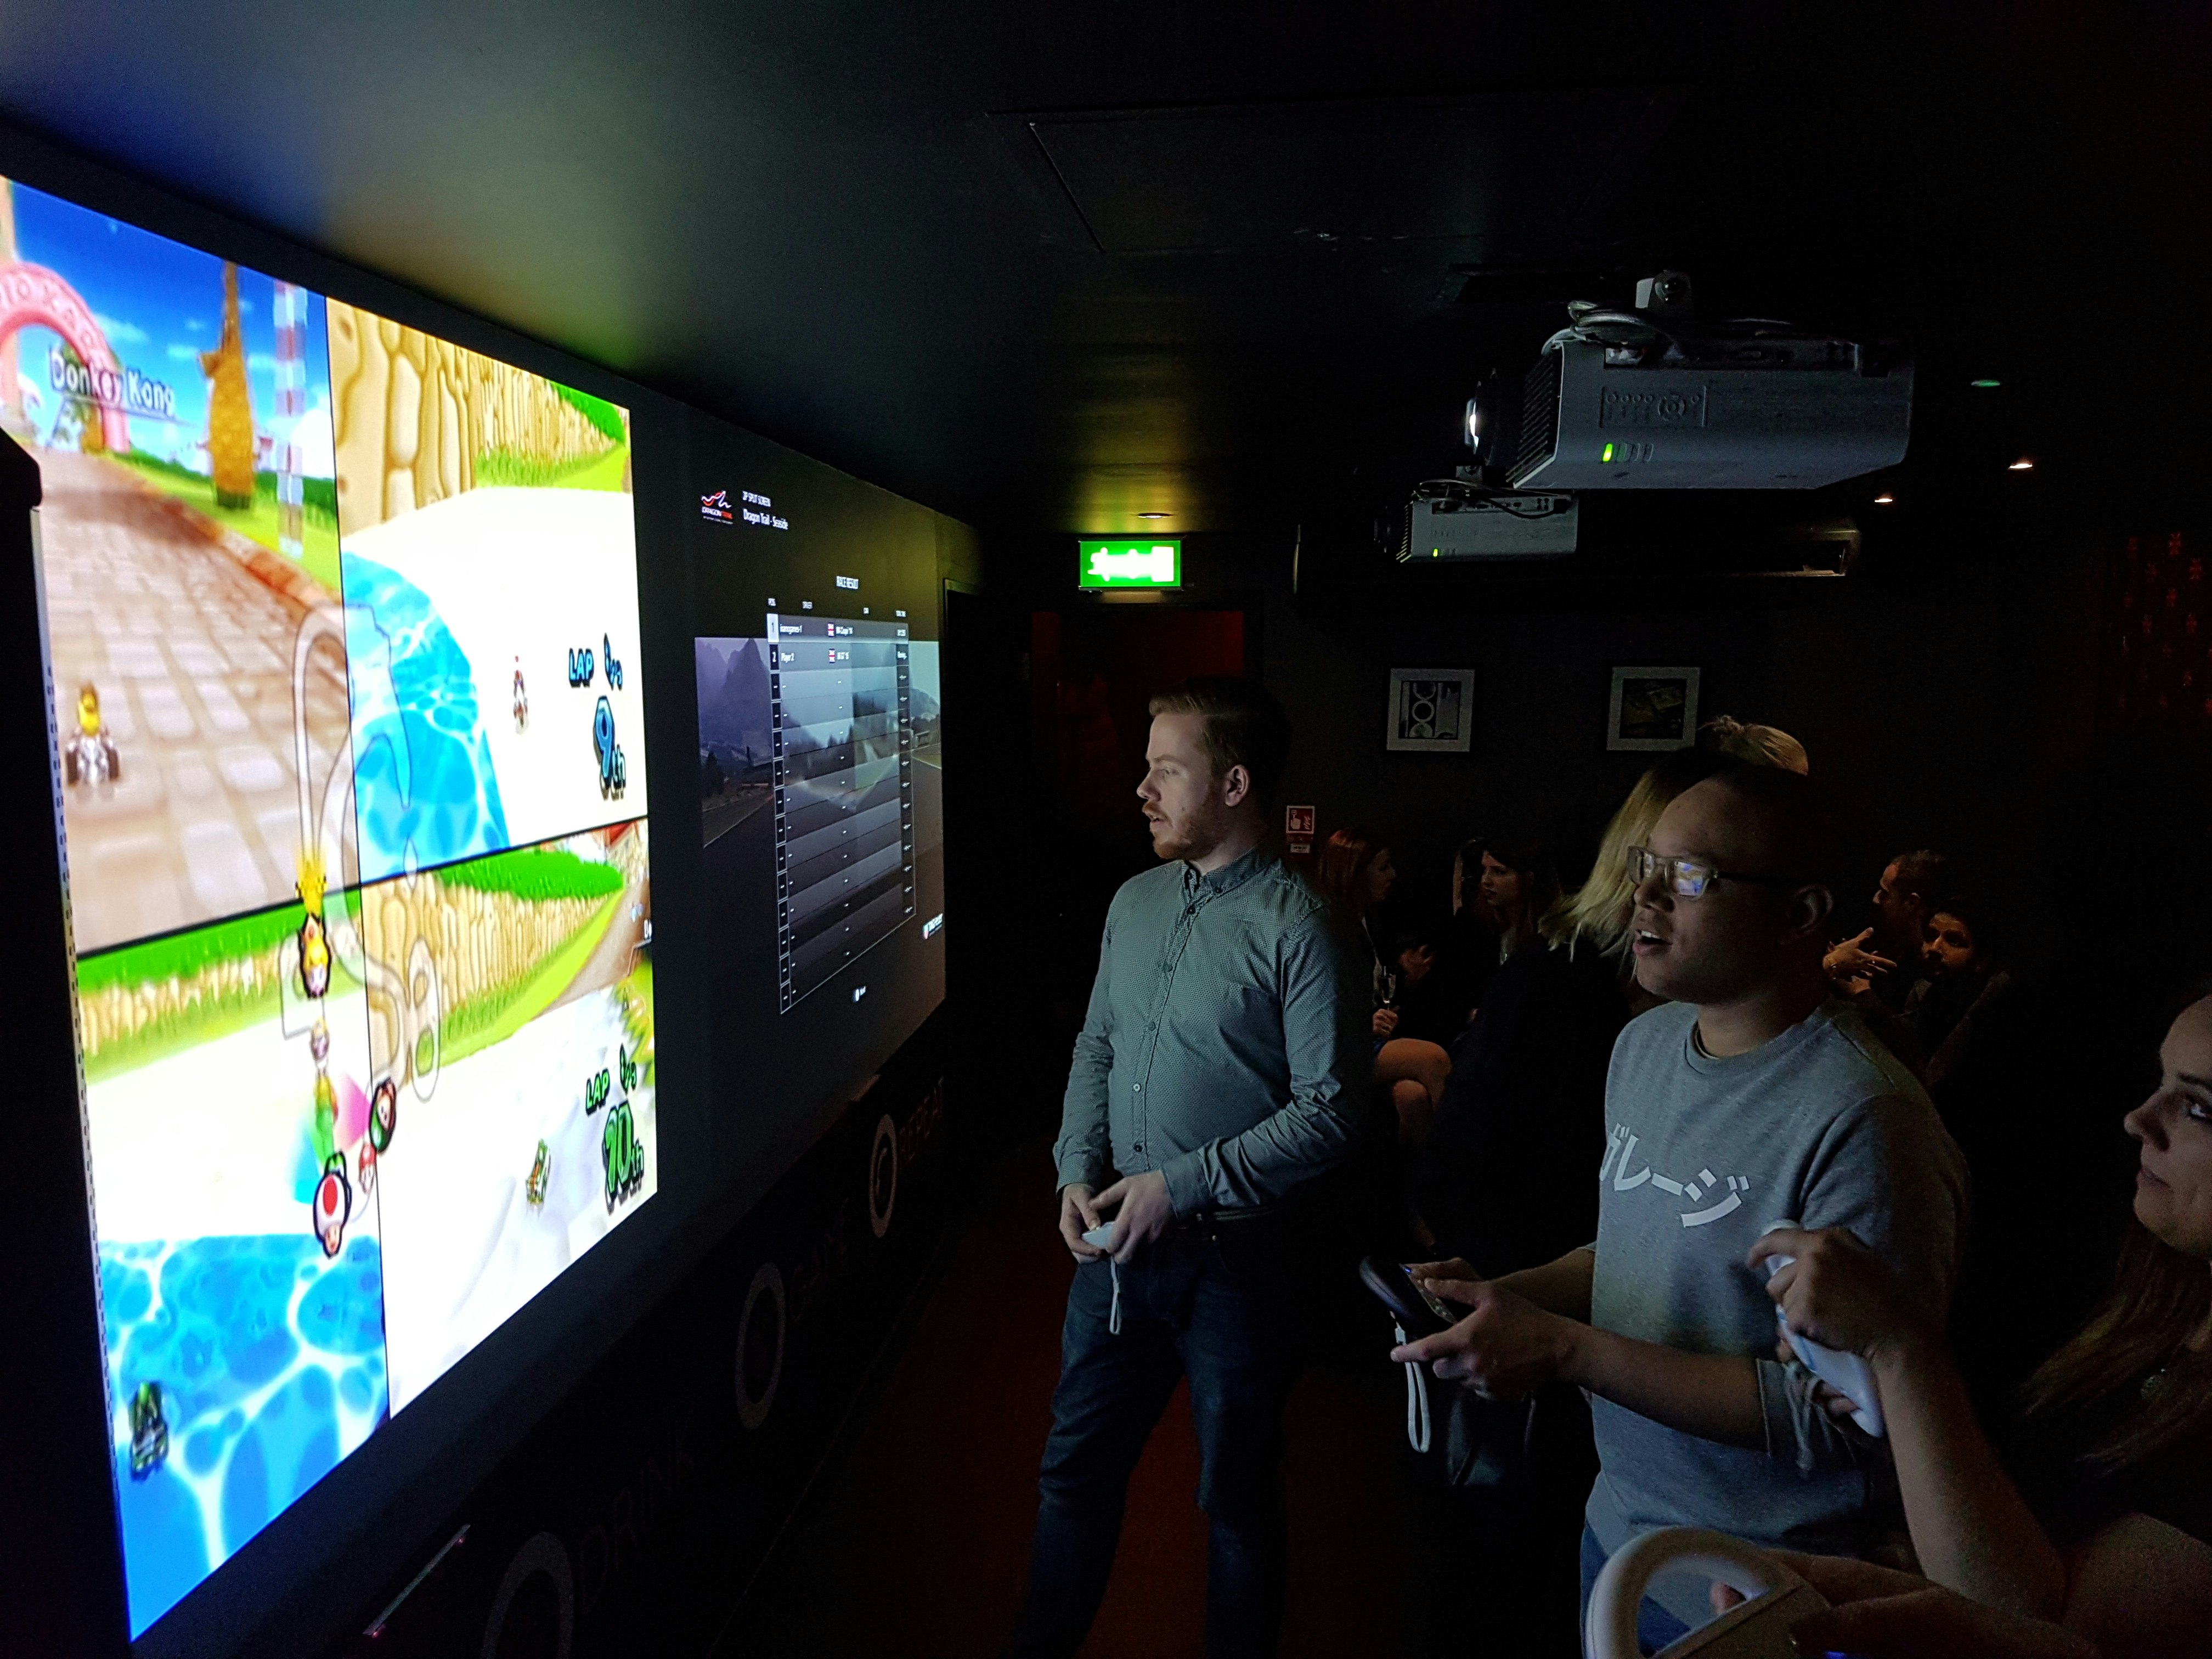 Karaoke Bars Venues in Mayfair - The Games Room